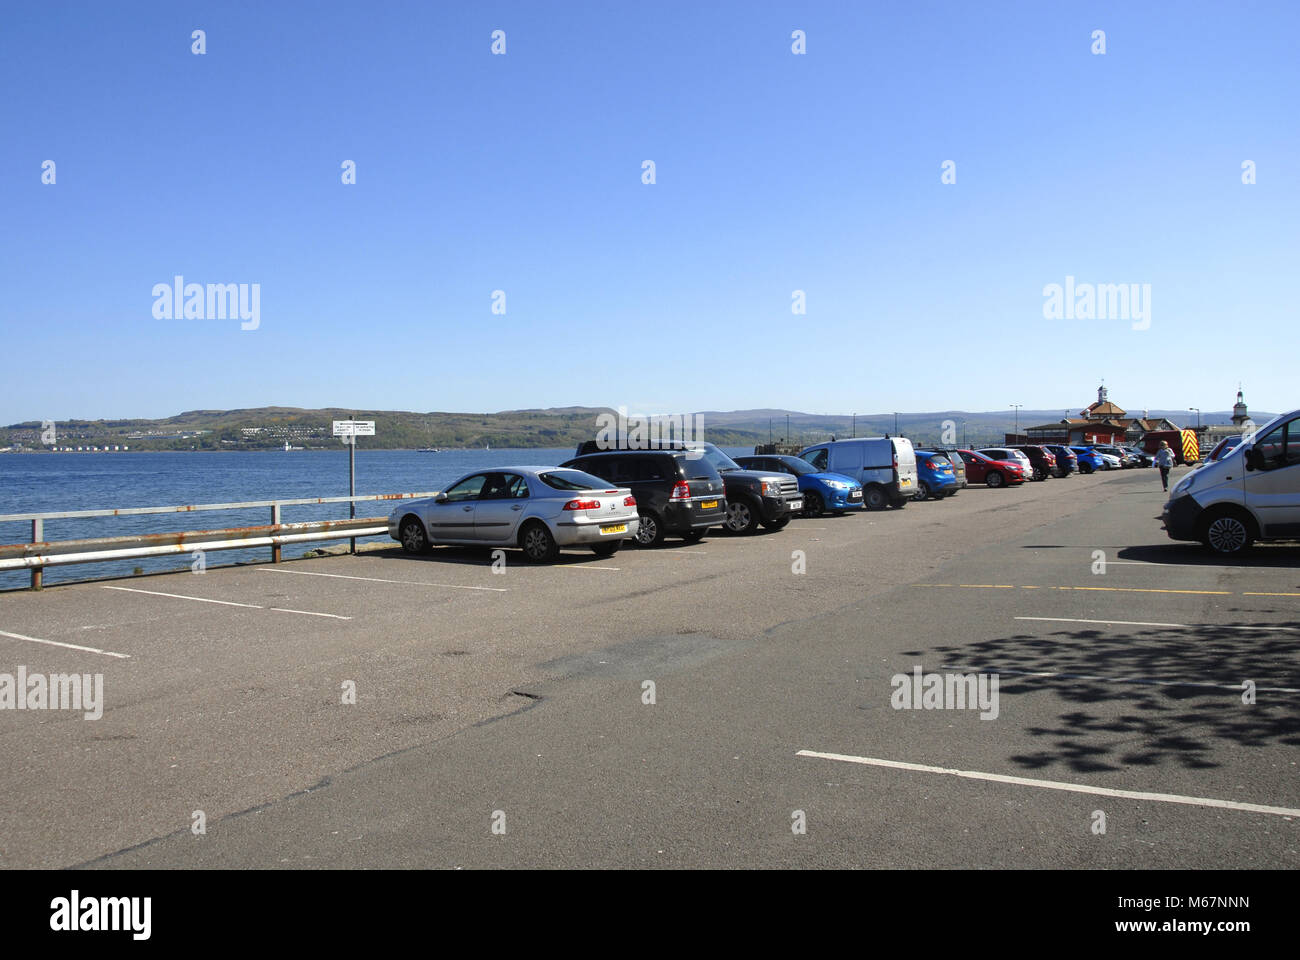 Parcheggio auto con diverse aree per pagare e parcheggio gratuito, Dunoon Foto Stock